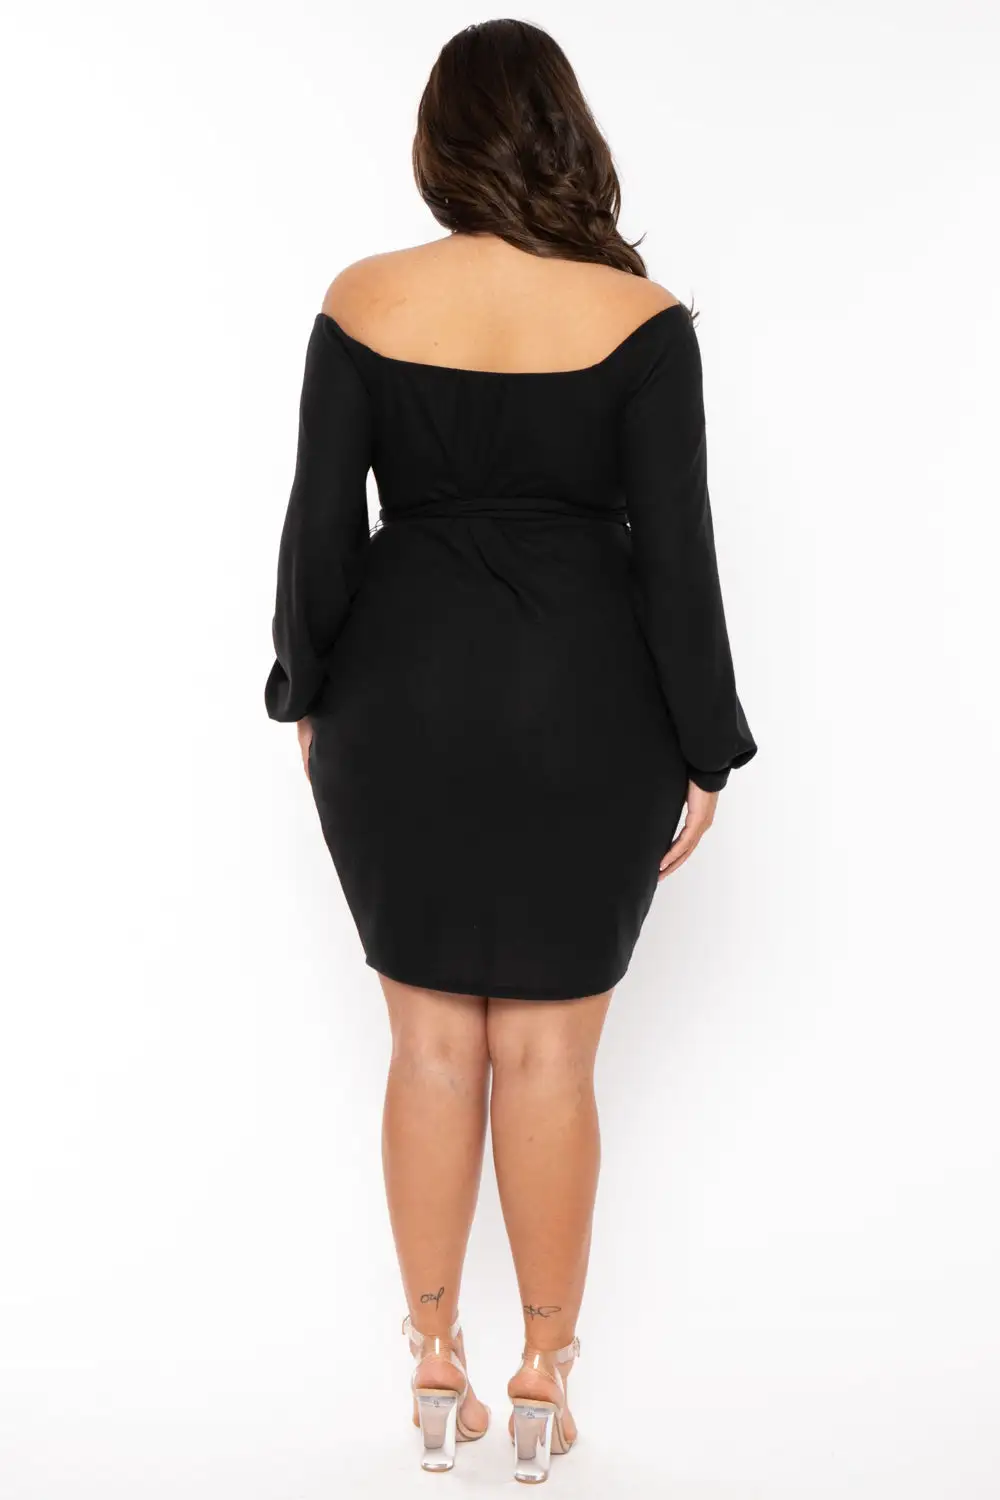 Plus Size Kiera Sweetheart Sweater Dress- Black